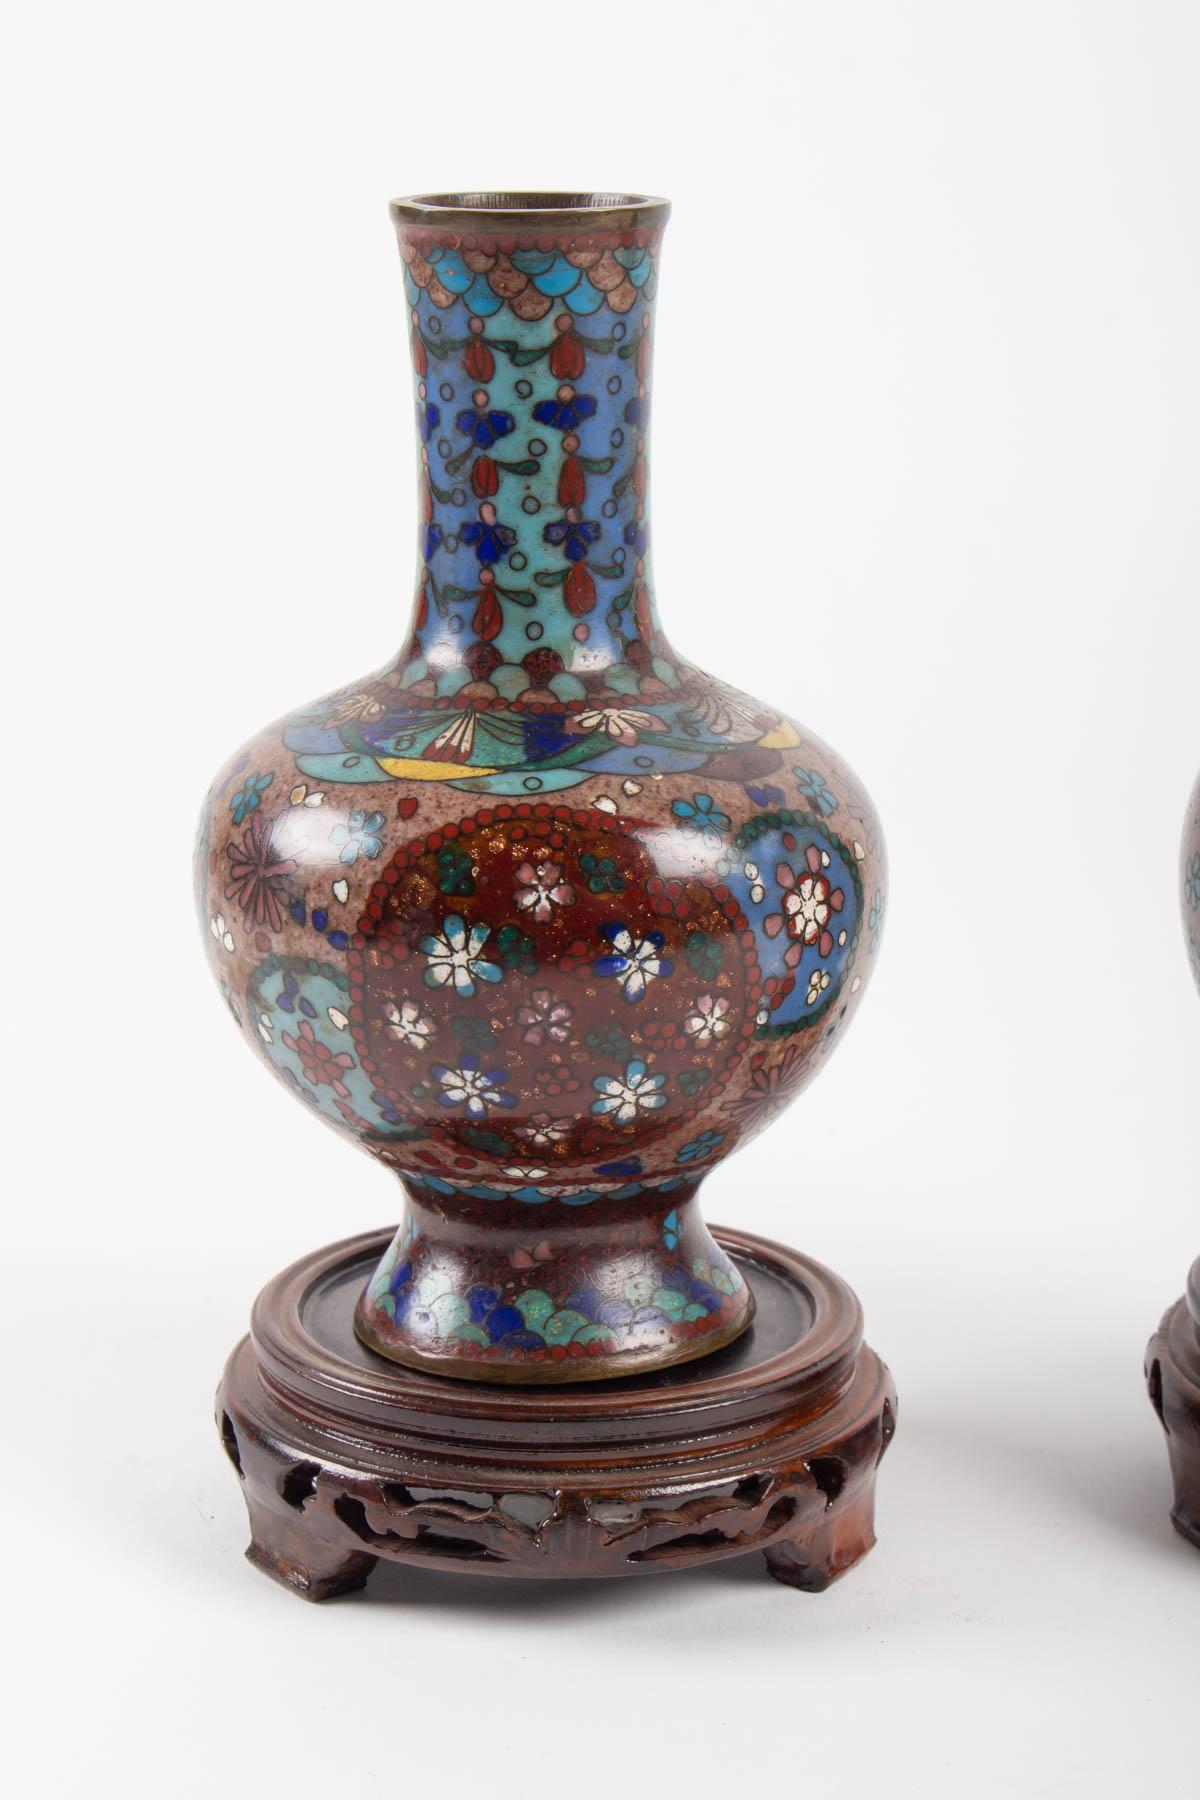 Pair of cloisonné bronze vases, Japan, circa 1900, accident on one, slight depression
Measures: H 19cm, D 10cm.